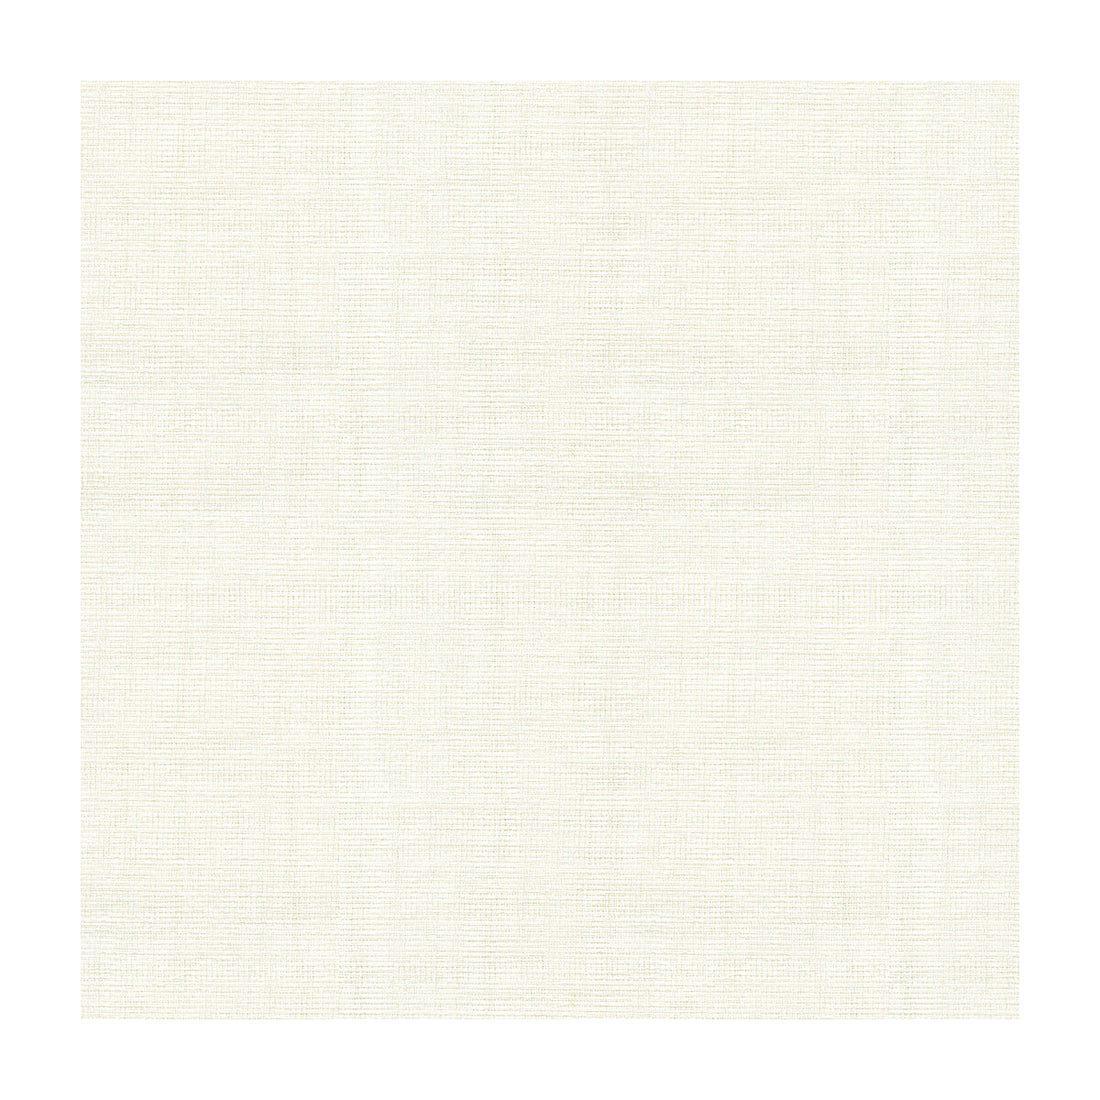 Kravet Basics fabric in 4125-101 color - pattern 4125.101.0 - by Kravet Basics